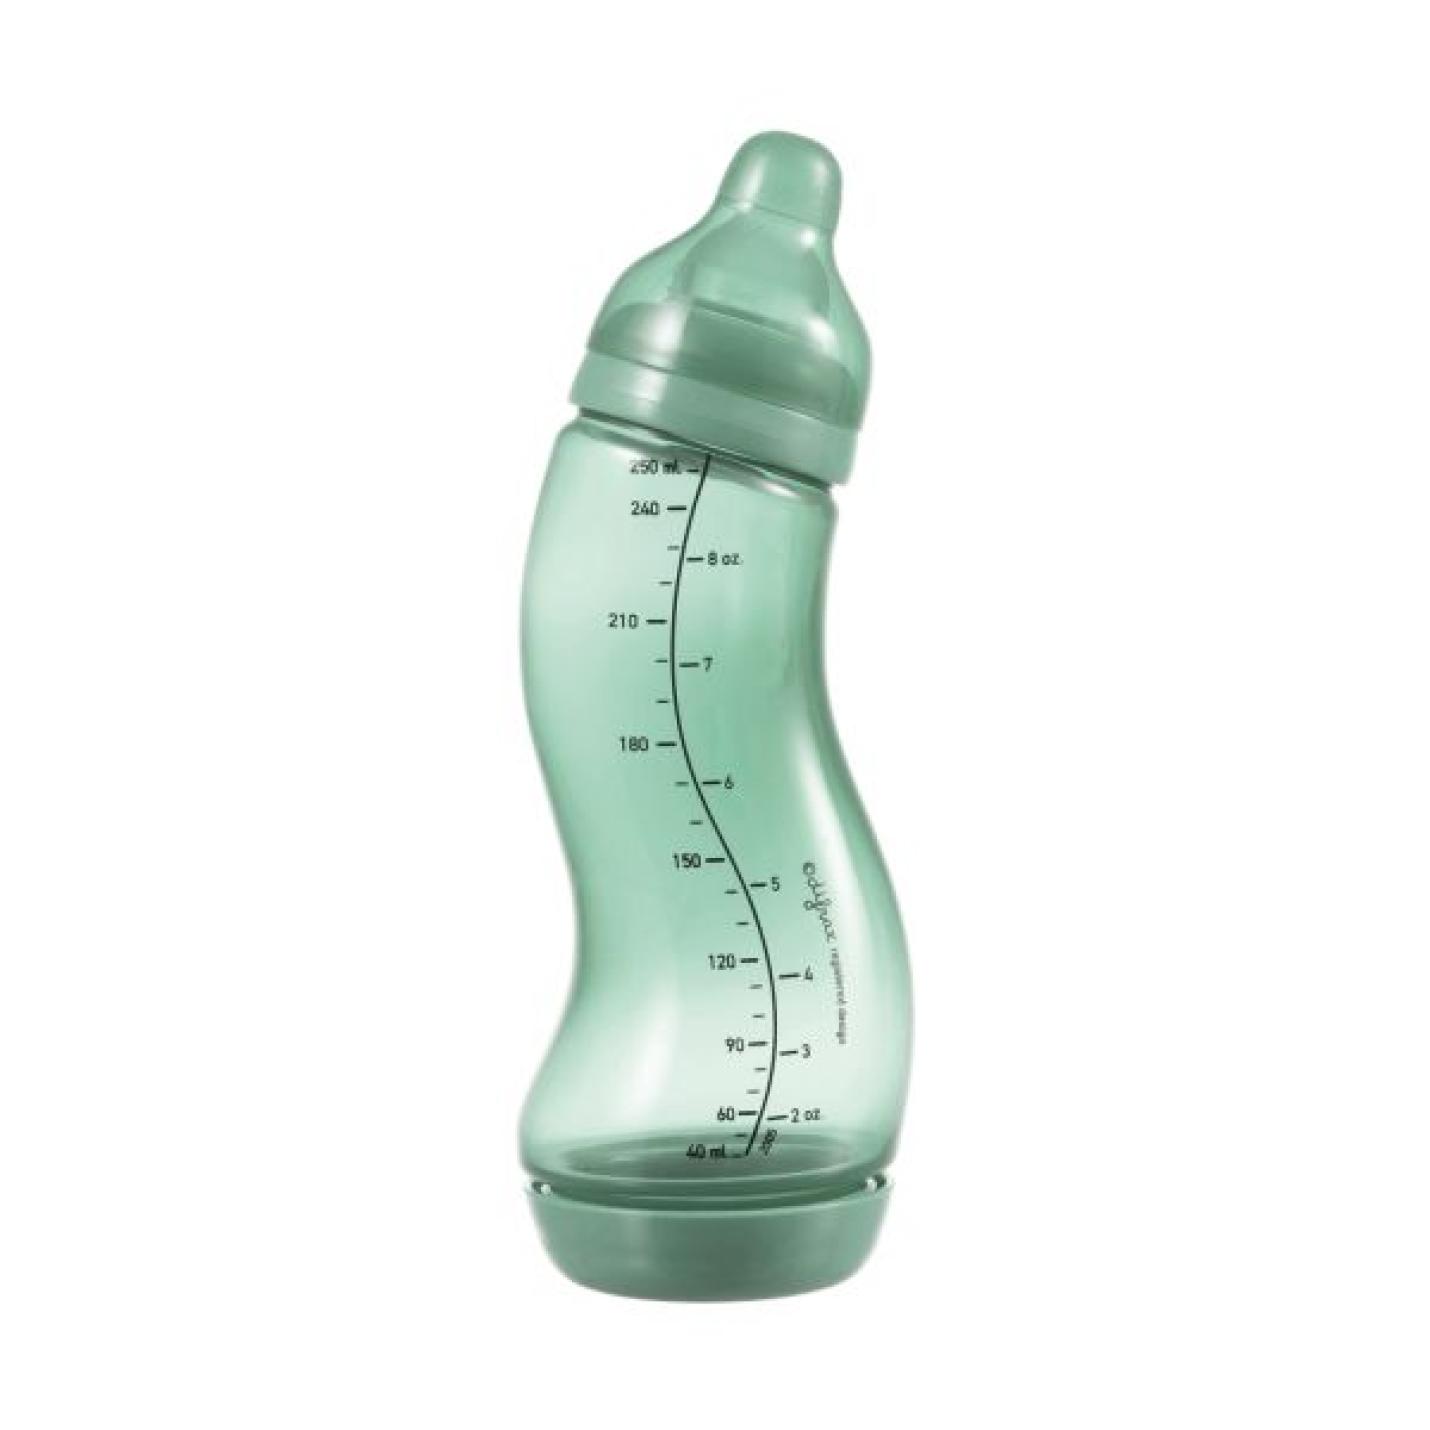 S-Fles Groen baby fles groen in s vorm met maatverdeling op fles en speen transparant erop schroefdop onderin